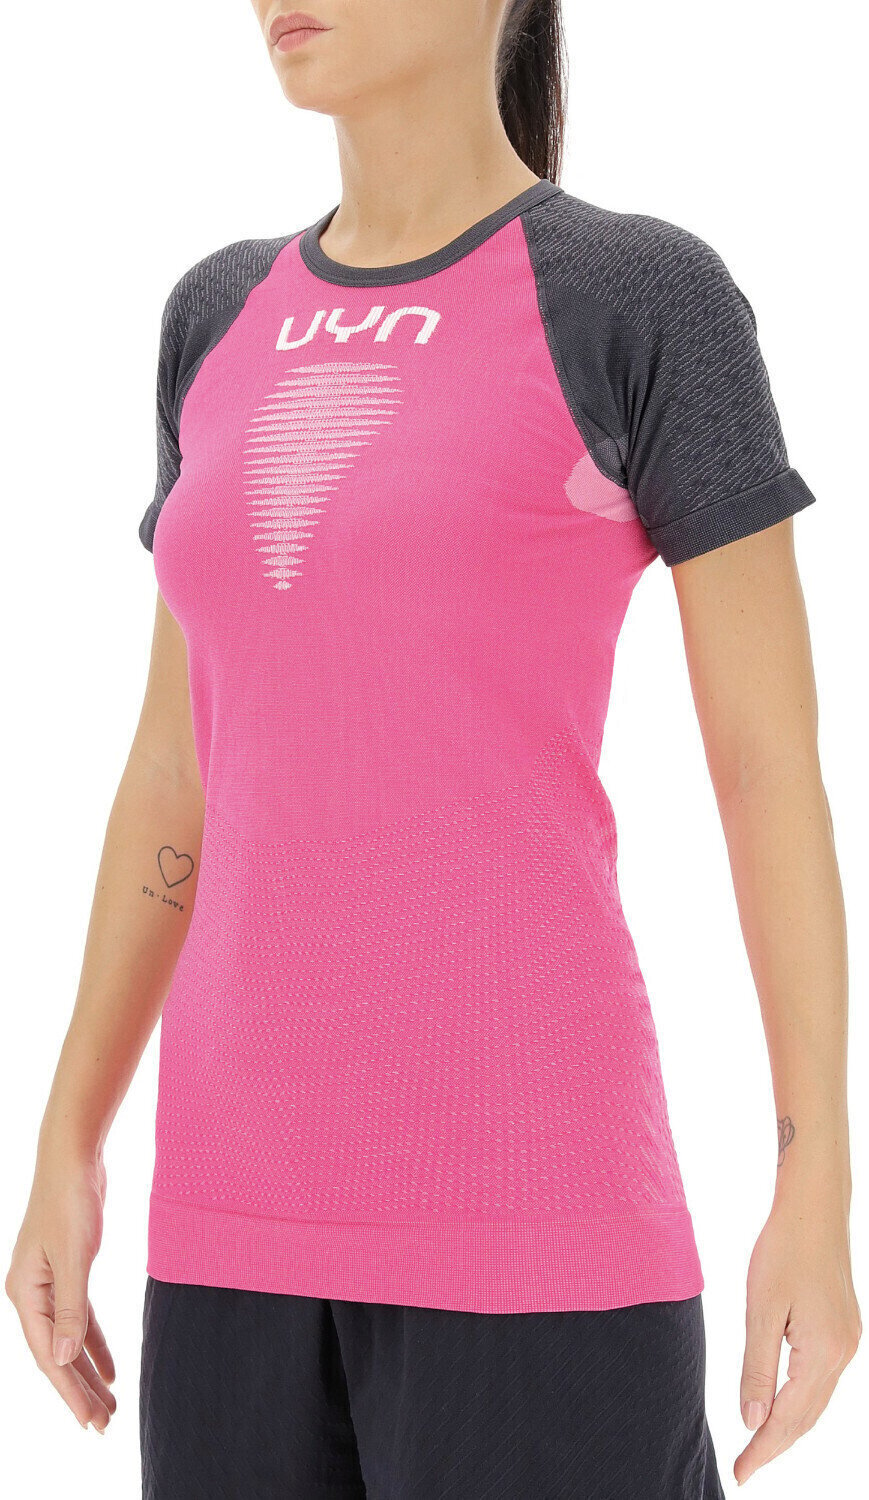 Chemise de course à manches courtes
 UYN Marathon Ow Shirt Magenta/Charcoal/White L/XL Chemise de course à manches courtes